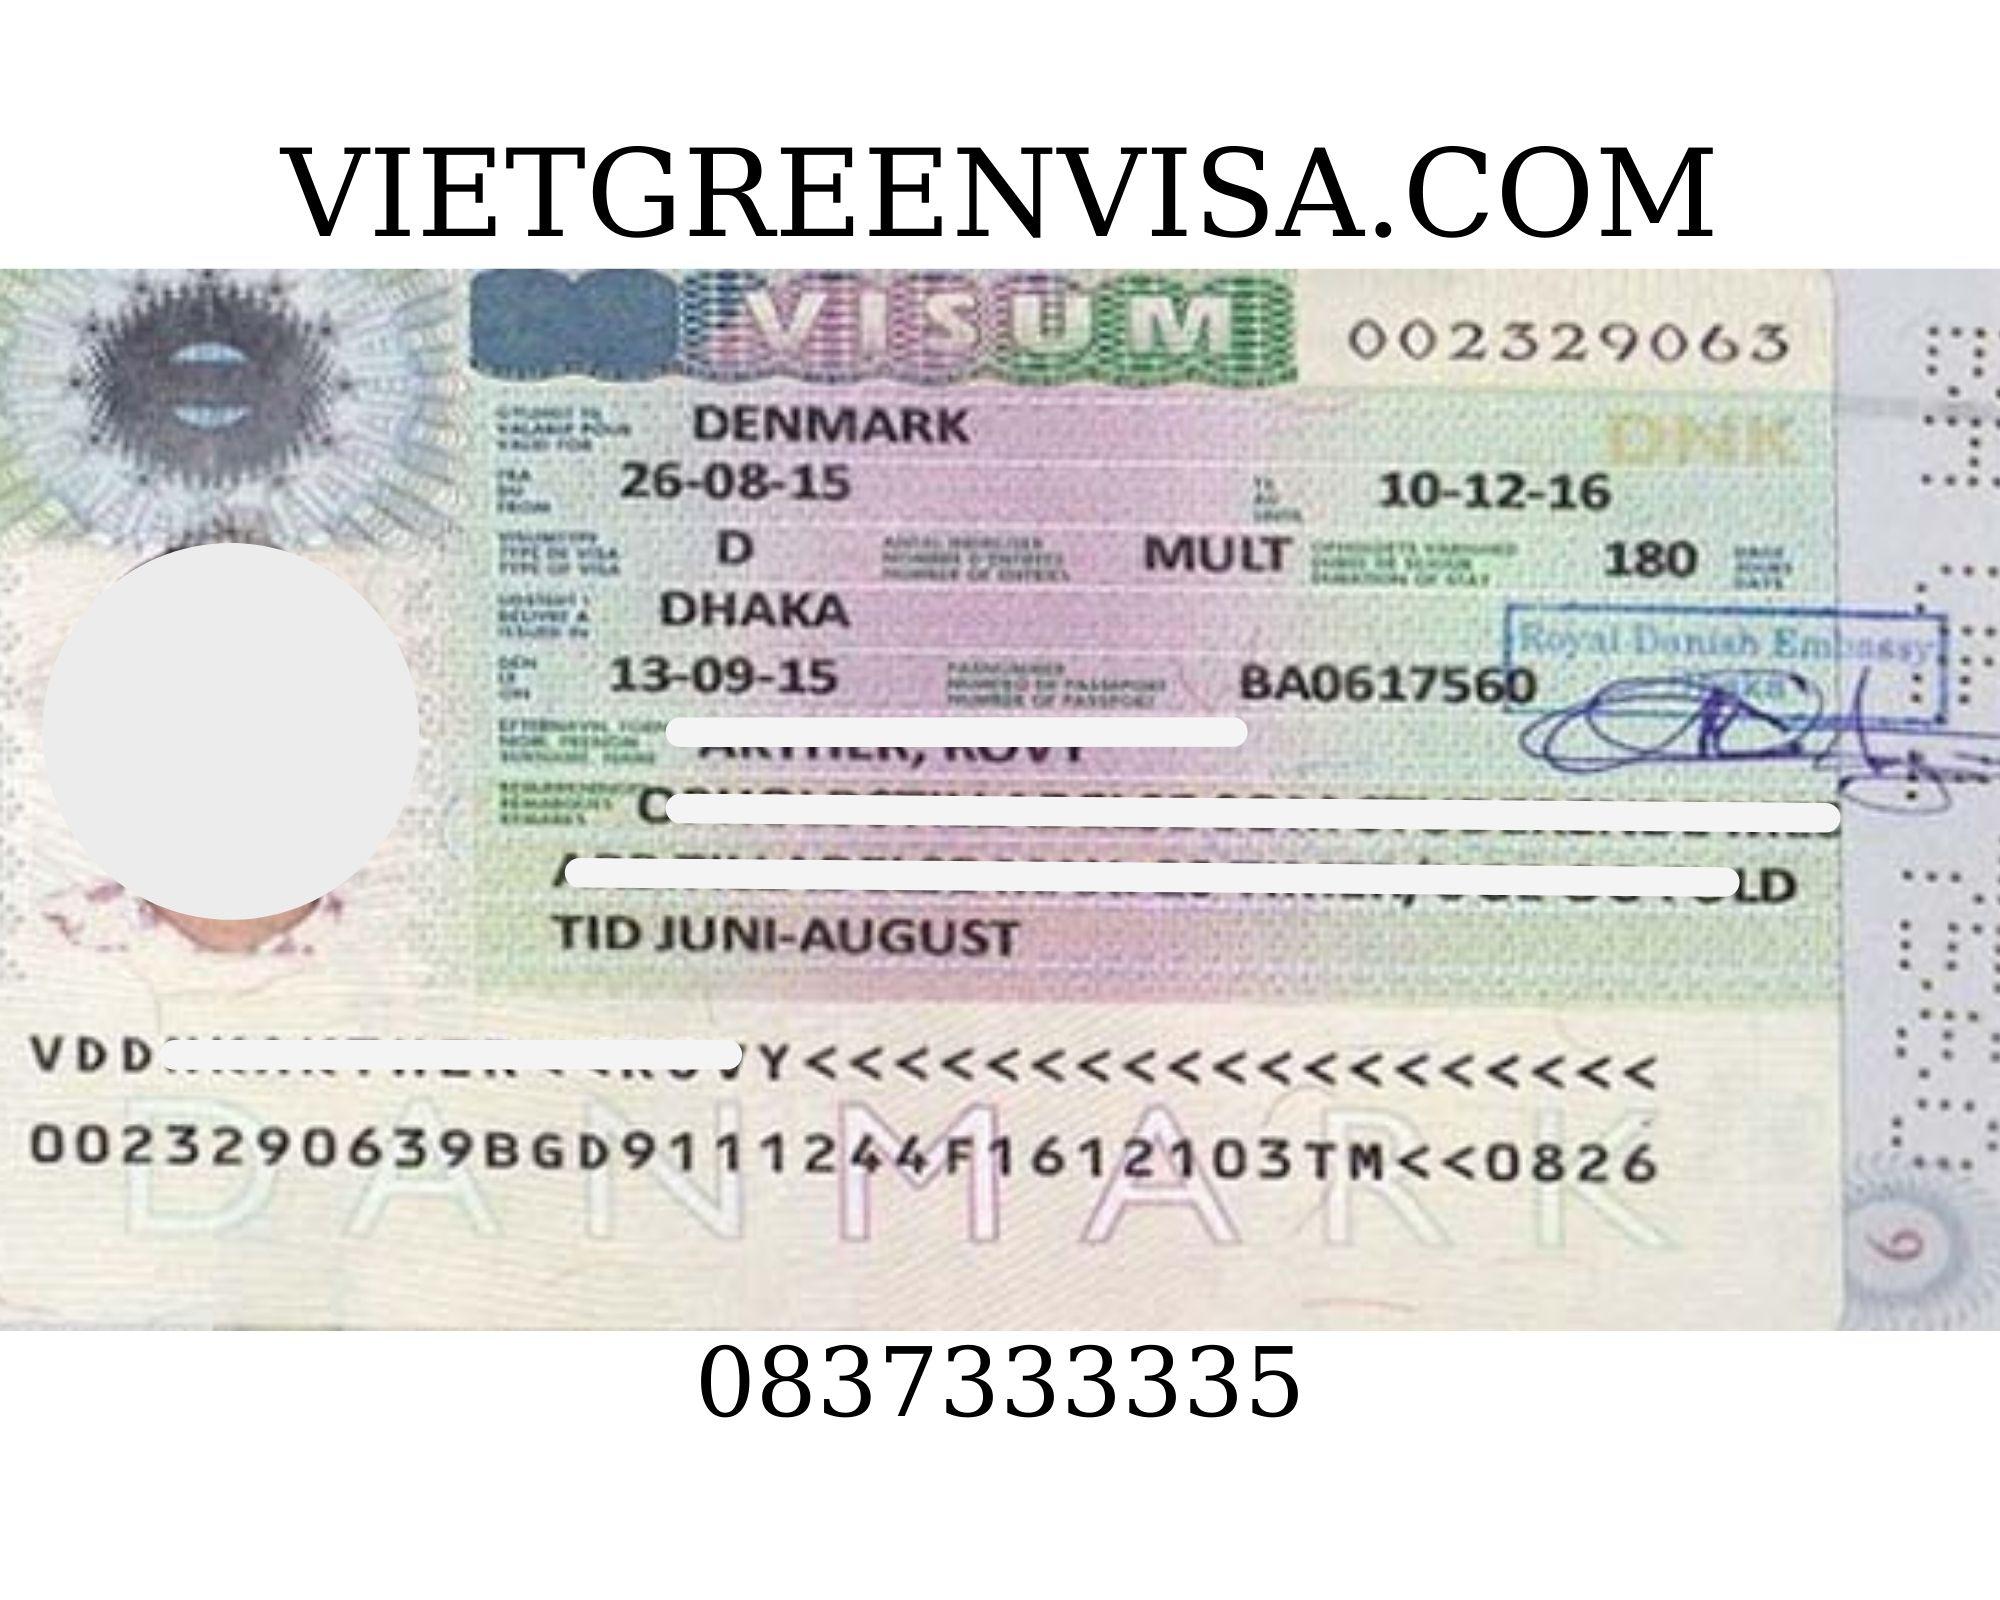 Dịch vụ điền đơn visa quần đảo Faroe online uy tín